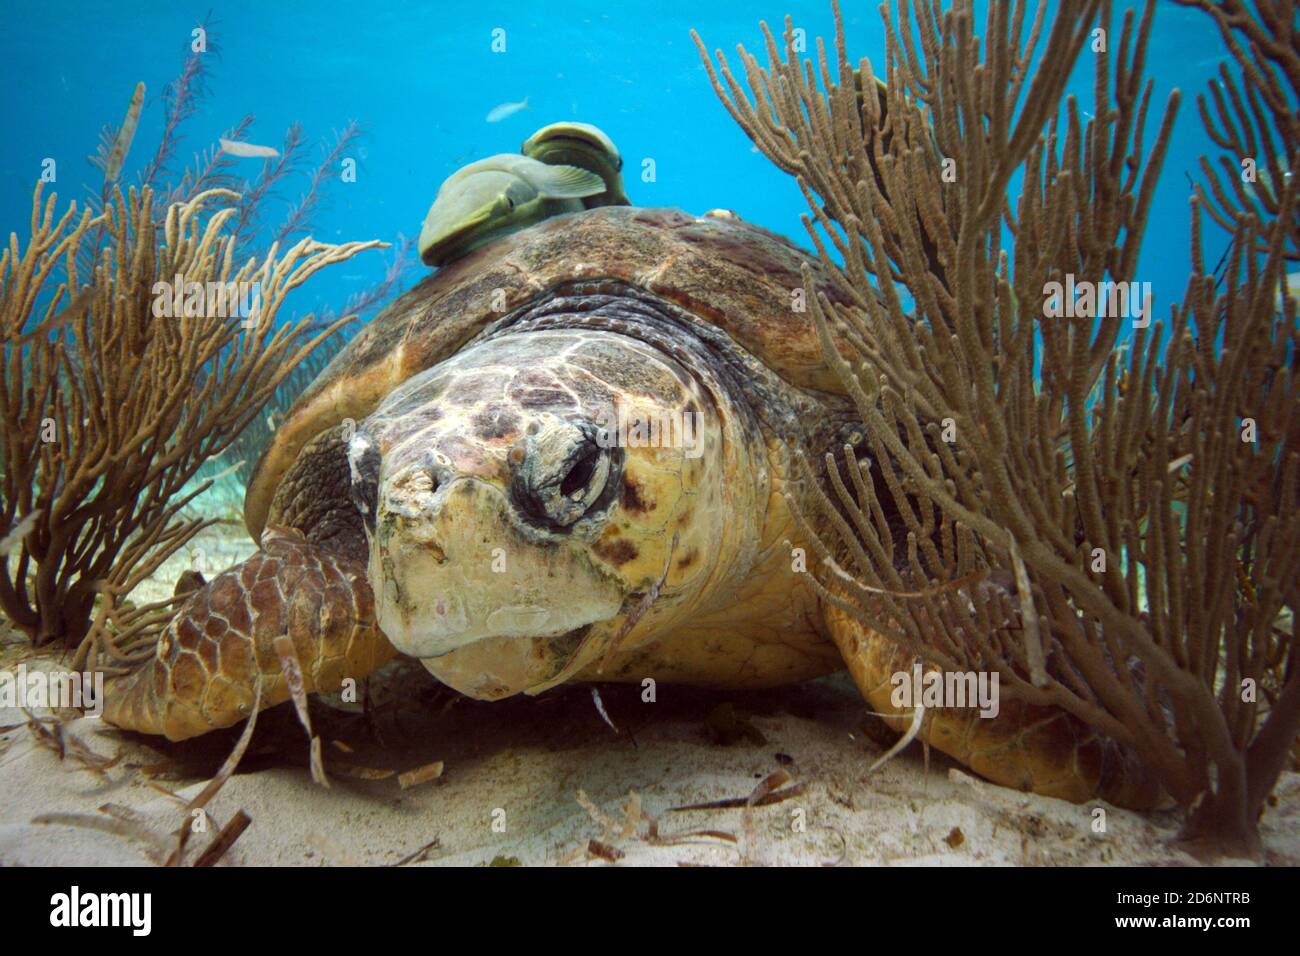 Karettschildkröte; Caretta Caretta, kann über 70 Jahre leben. Meeresschildkröten lieben es, Quallen und Seegras zu essen. Sie schlüpfen aus Eiern, die im Sand liegen. Stockfoto